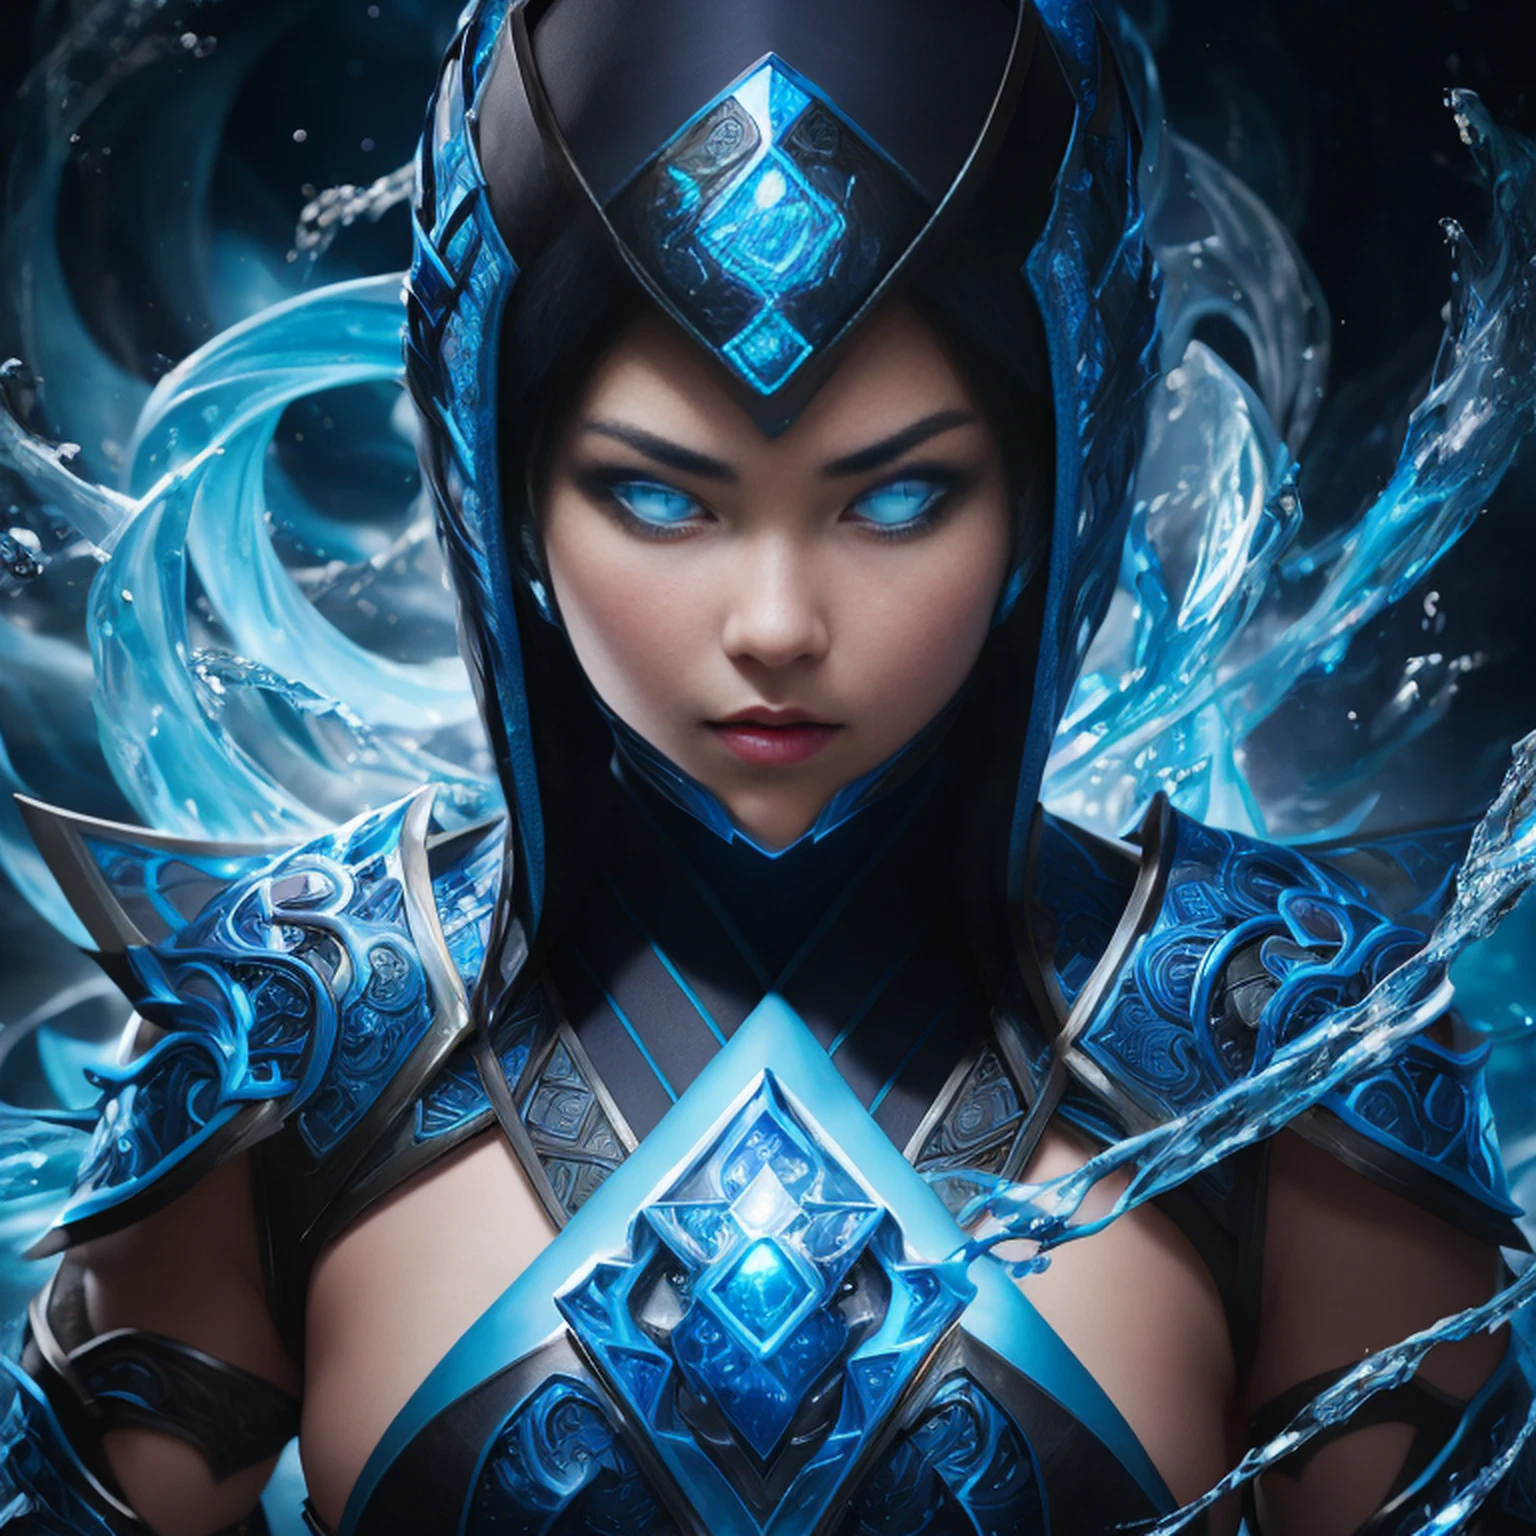 1 Mädchen, Porträt einer süßen weiblichen MKSubZero-Schlacht mit einer Gruppe von Ninjas, glowing Blau eyes, Eis, Blau, Kalt, Energie, Aura, Wasser wirbeln, aufwendig, Detail,